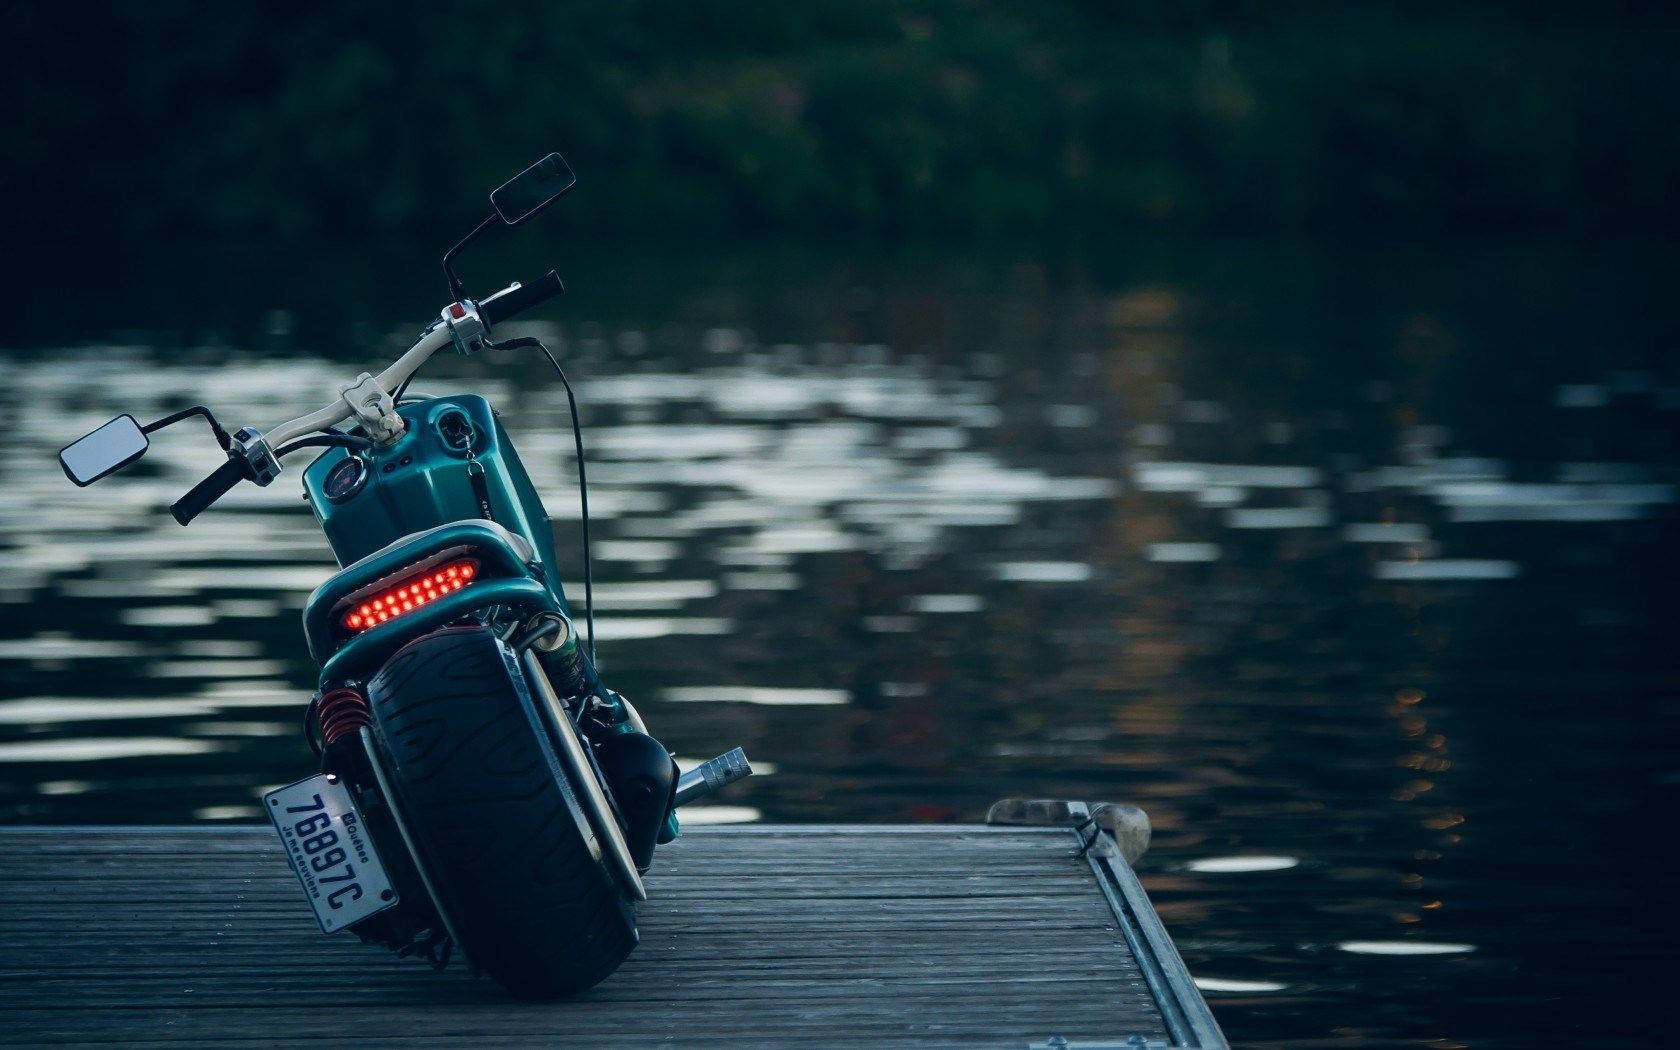 Hd Motorcycle Near Water